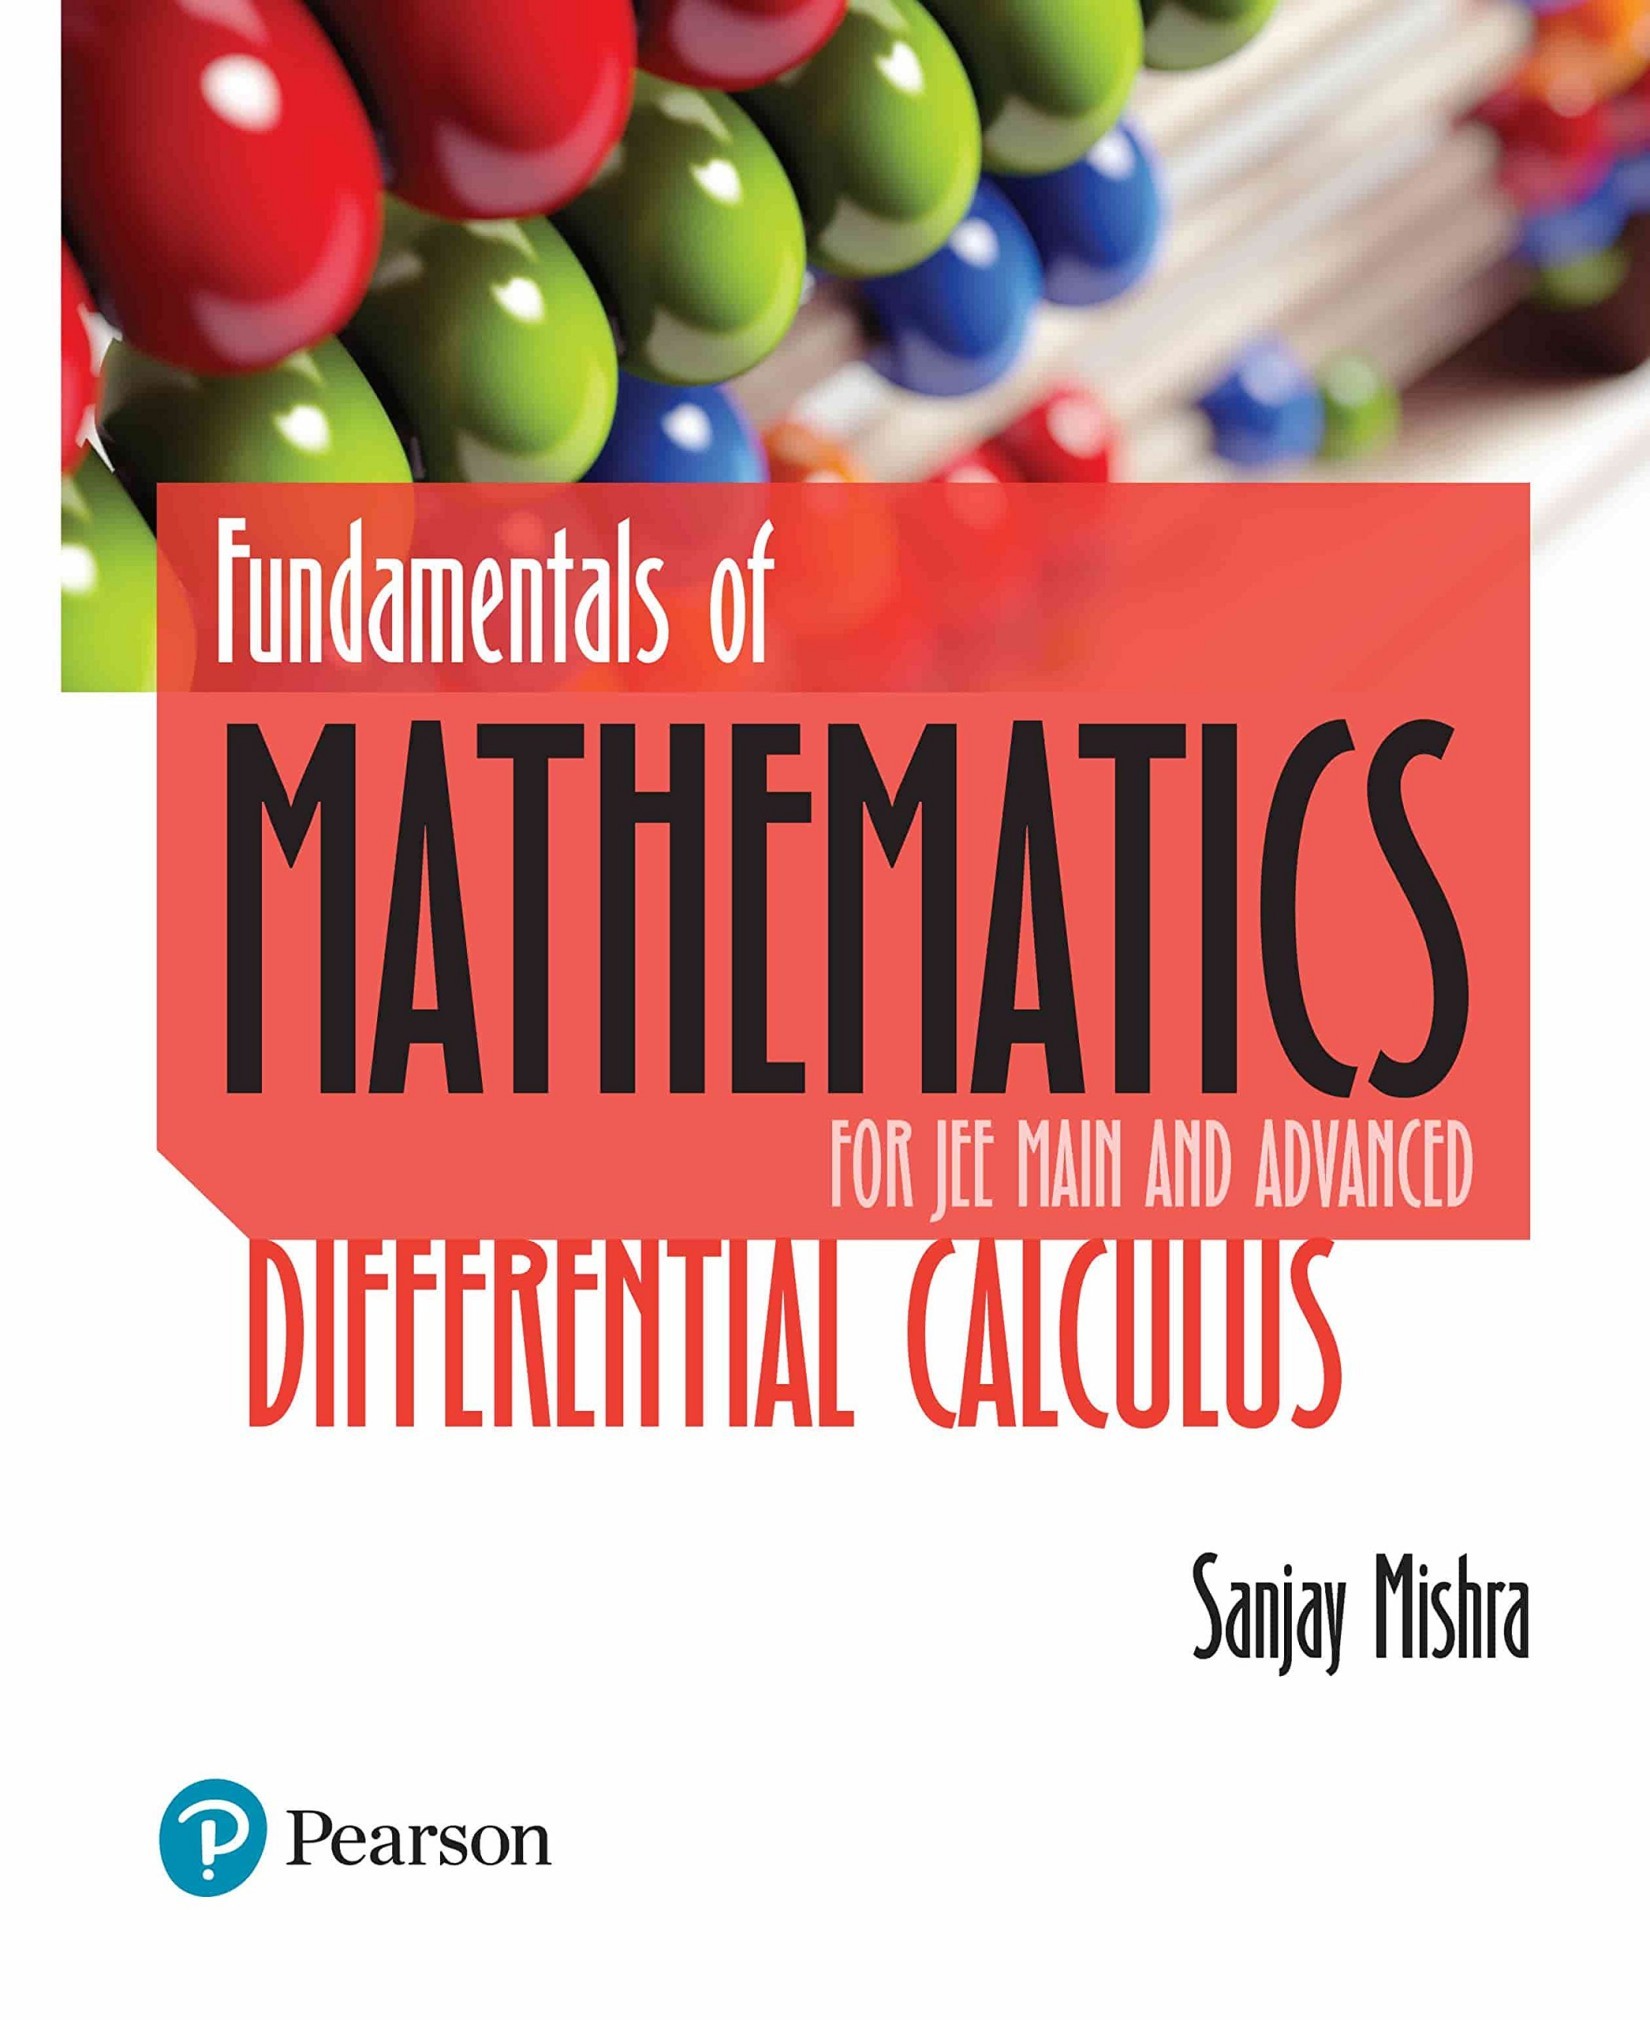 Fundamentals of Mathematics Differential Calculus